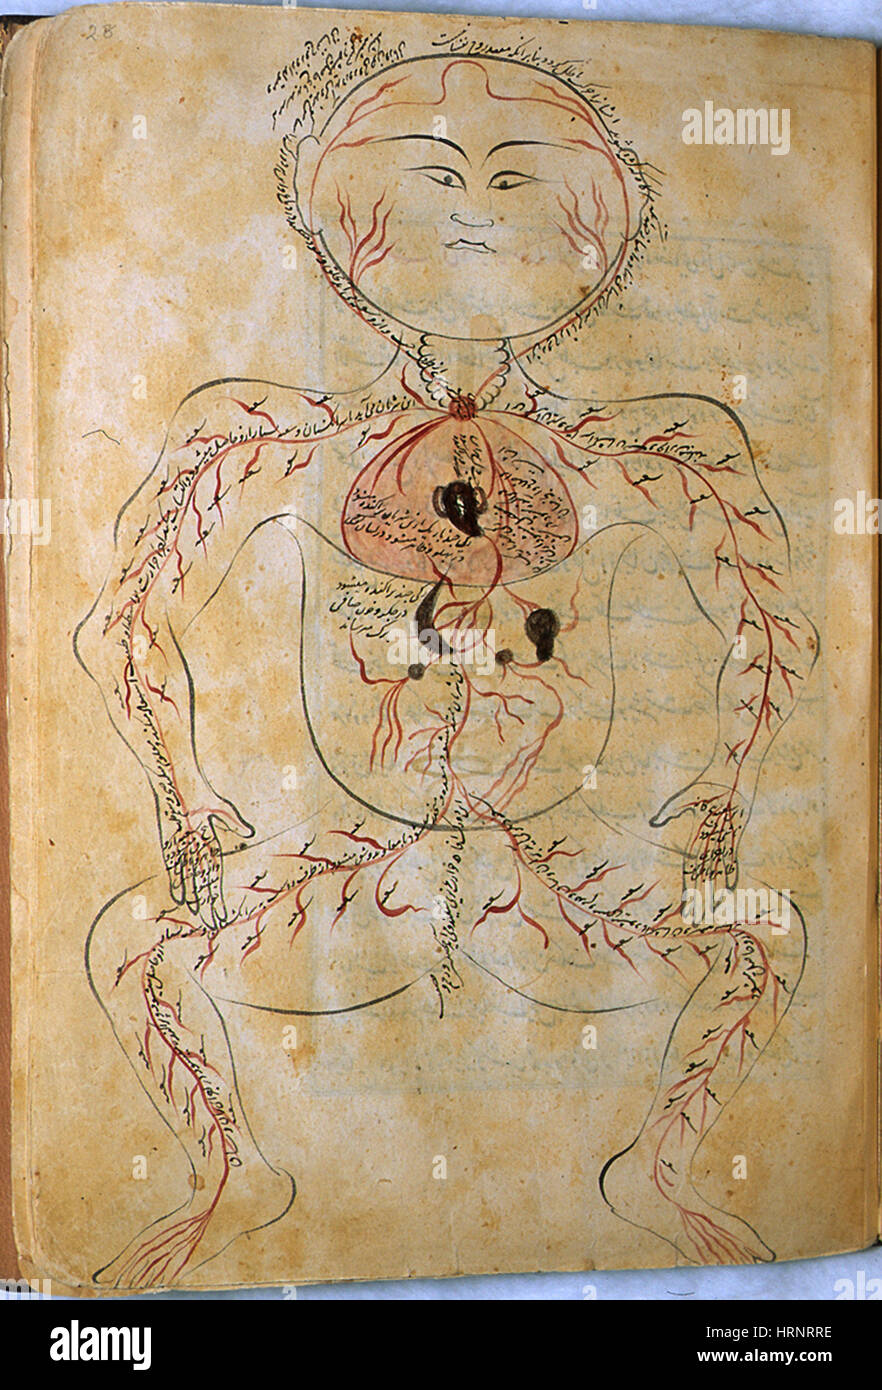 Mansur, anatomie du système artériel, 15e siècle Banque D'Images